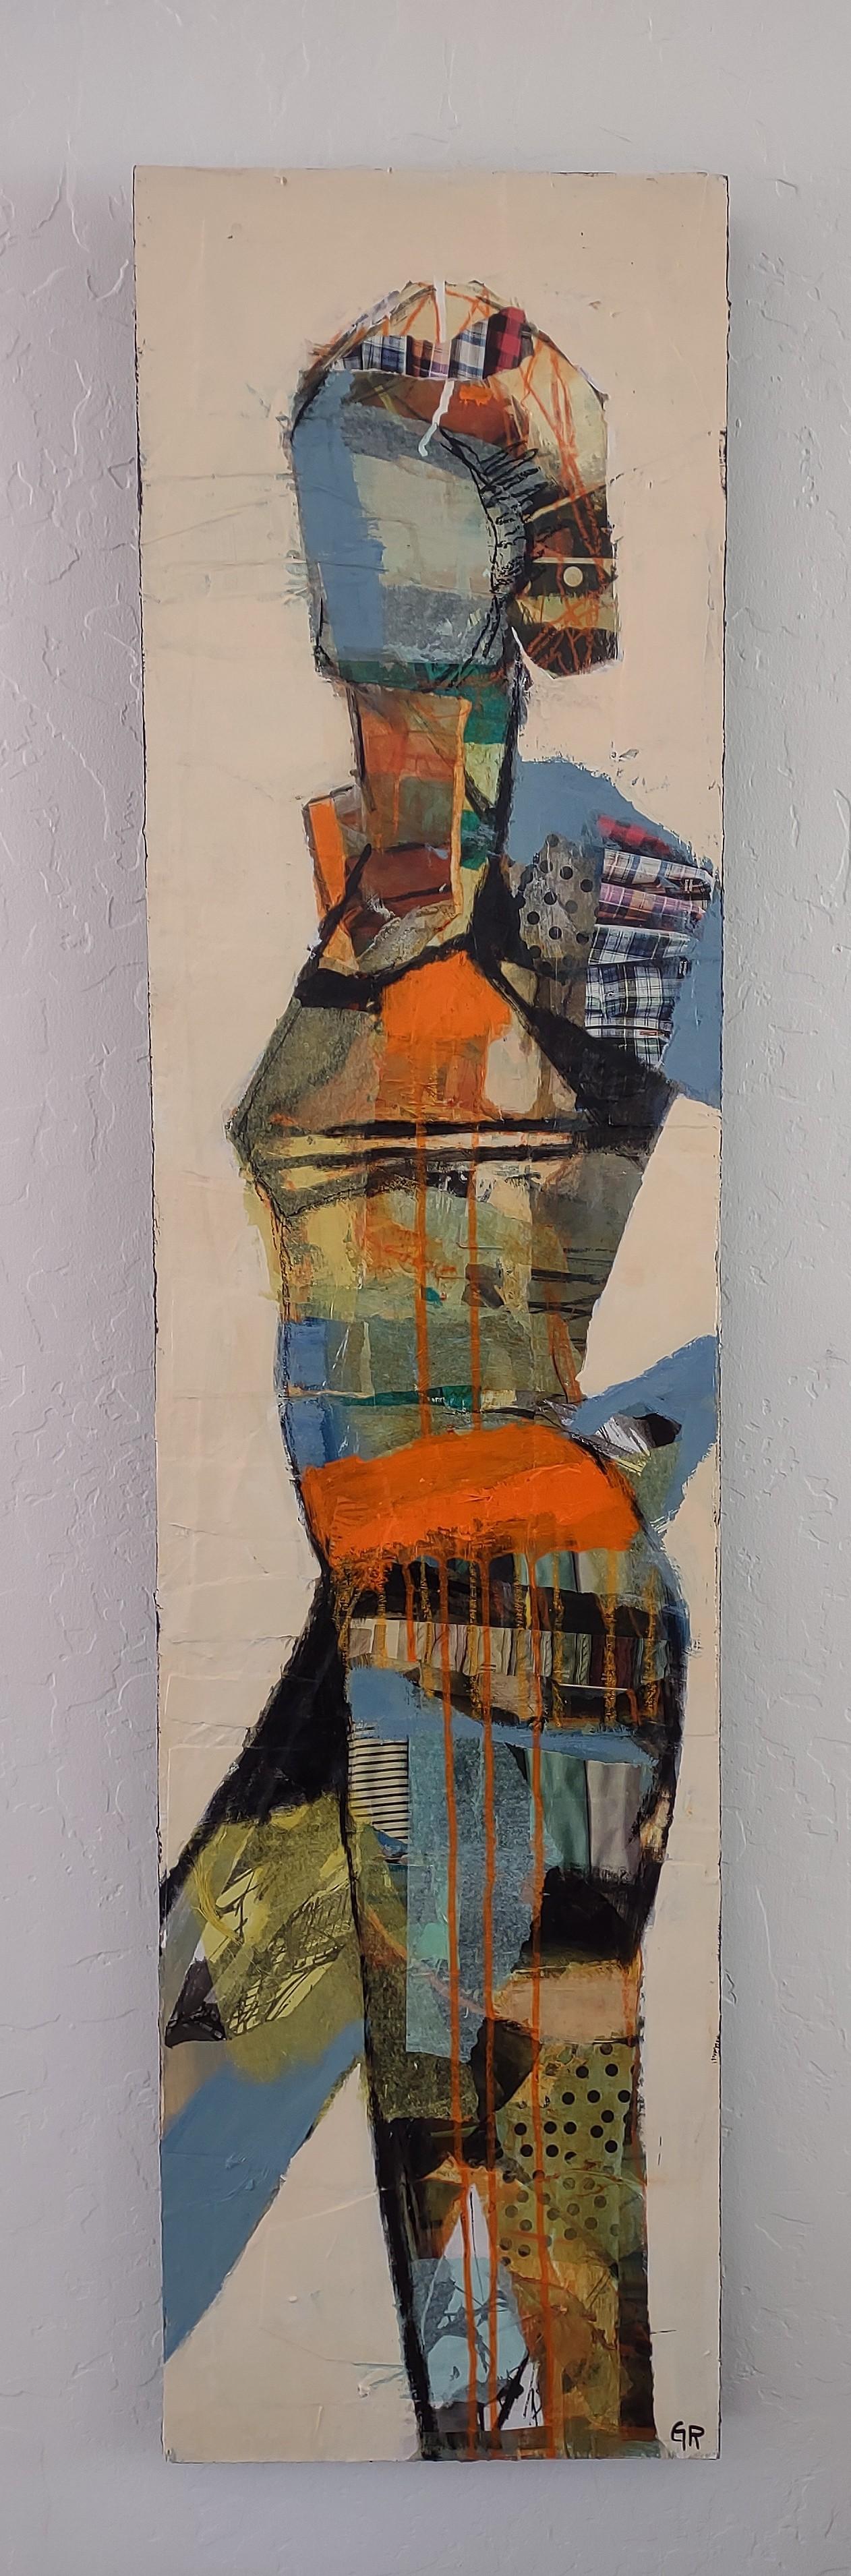 <p>Commentaires de l'artiste<br>L'artiste Gail Ragains capture un modèle en pleine pose, dépeignant sa silhouette avec un mélange de papiers de collage, de glacis acryliques et de pastels à l'huile. La combinaison de couleurs vives et la diversité